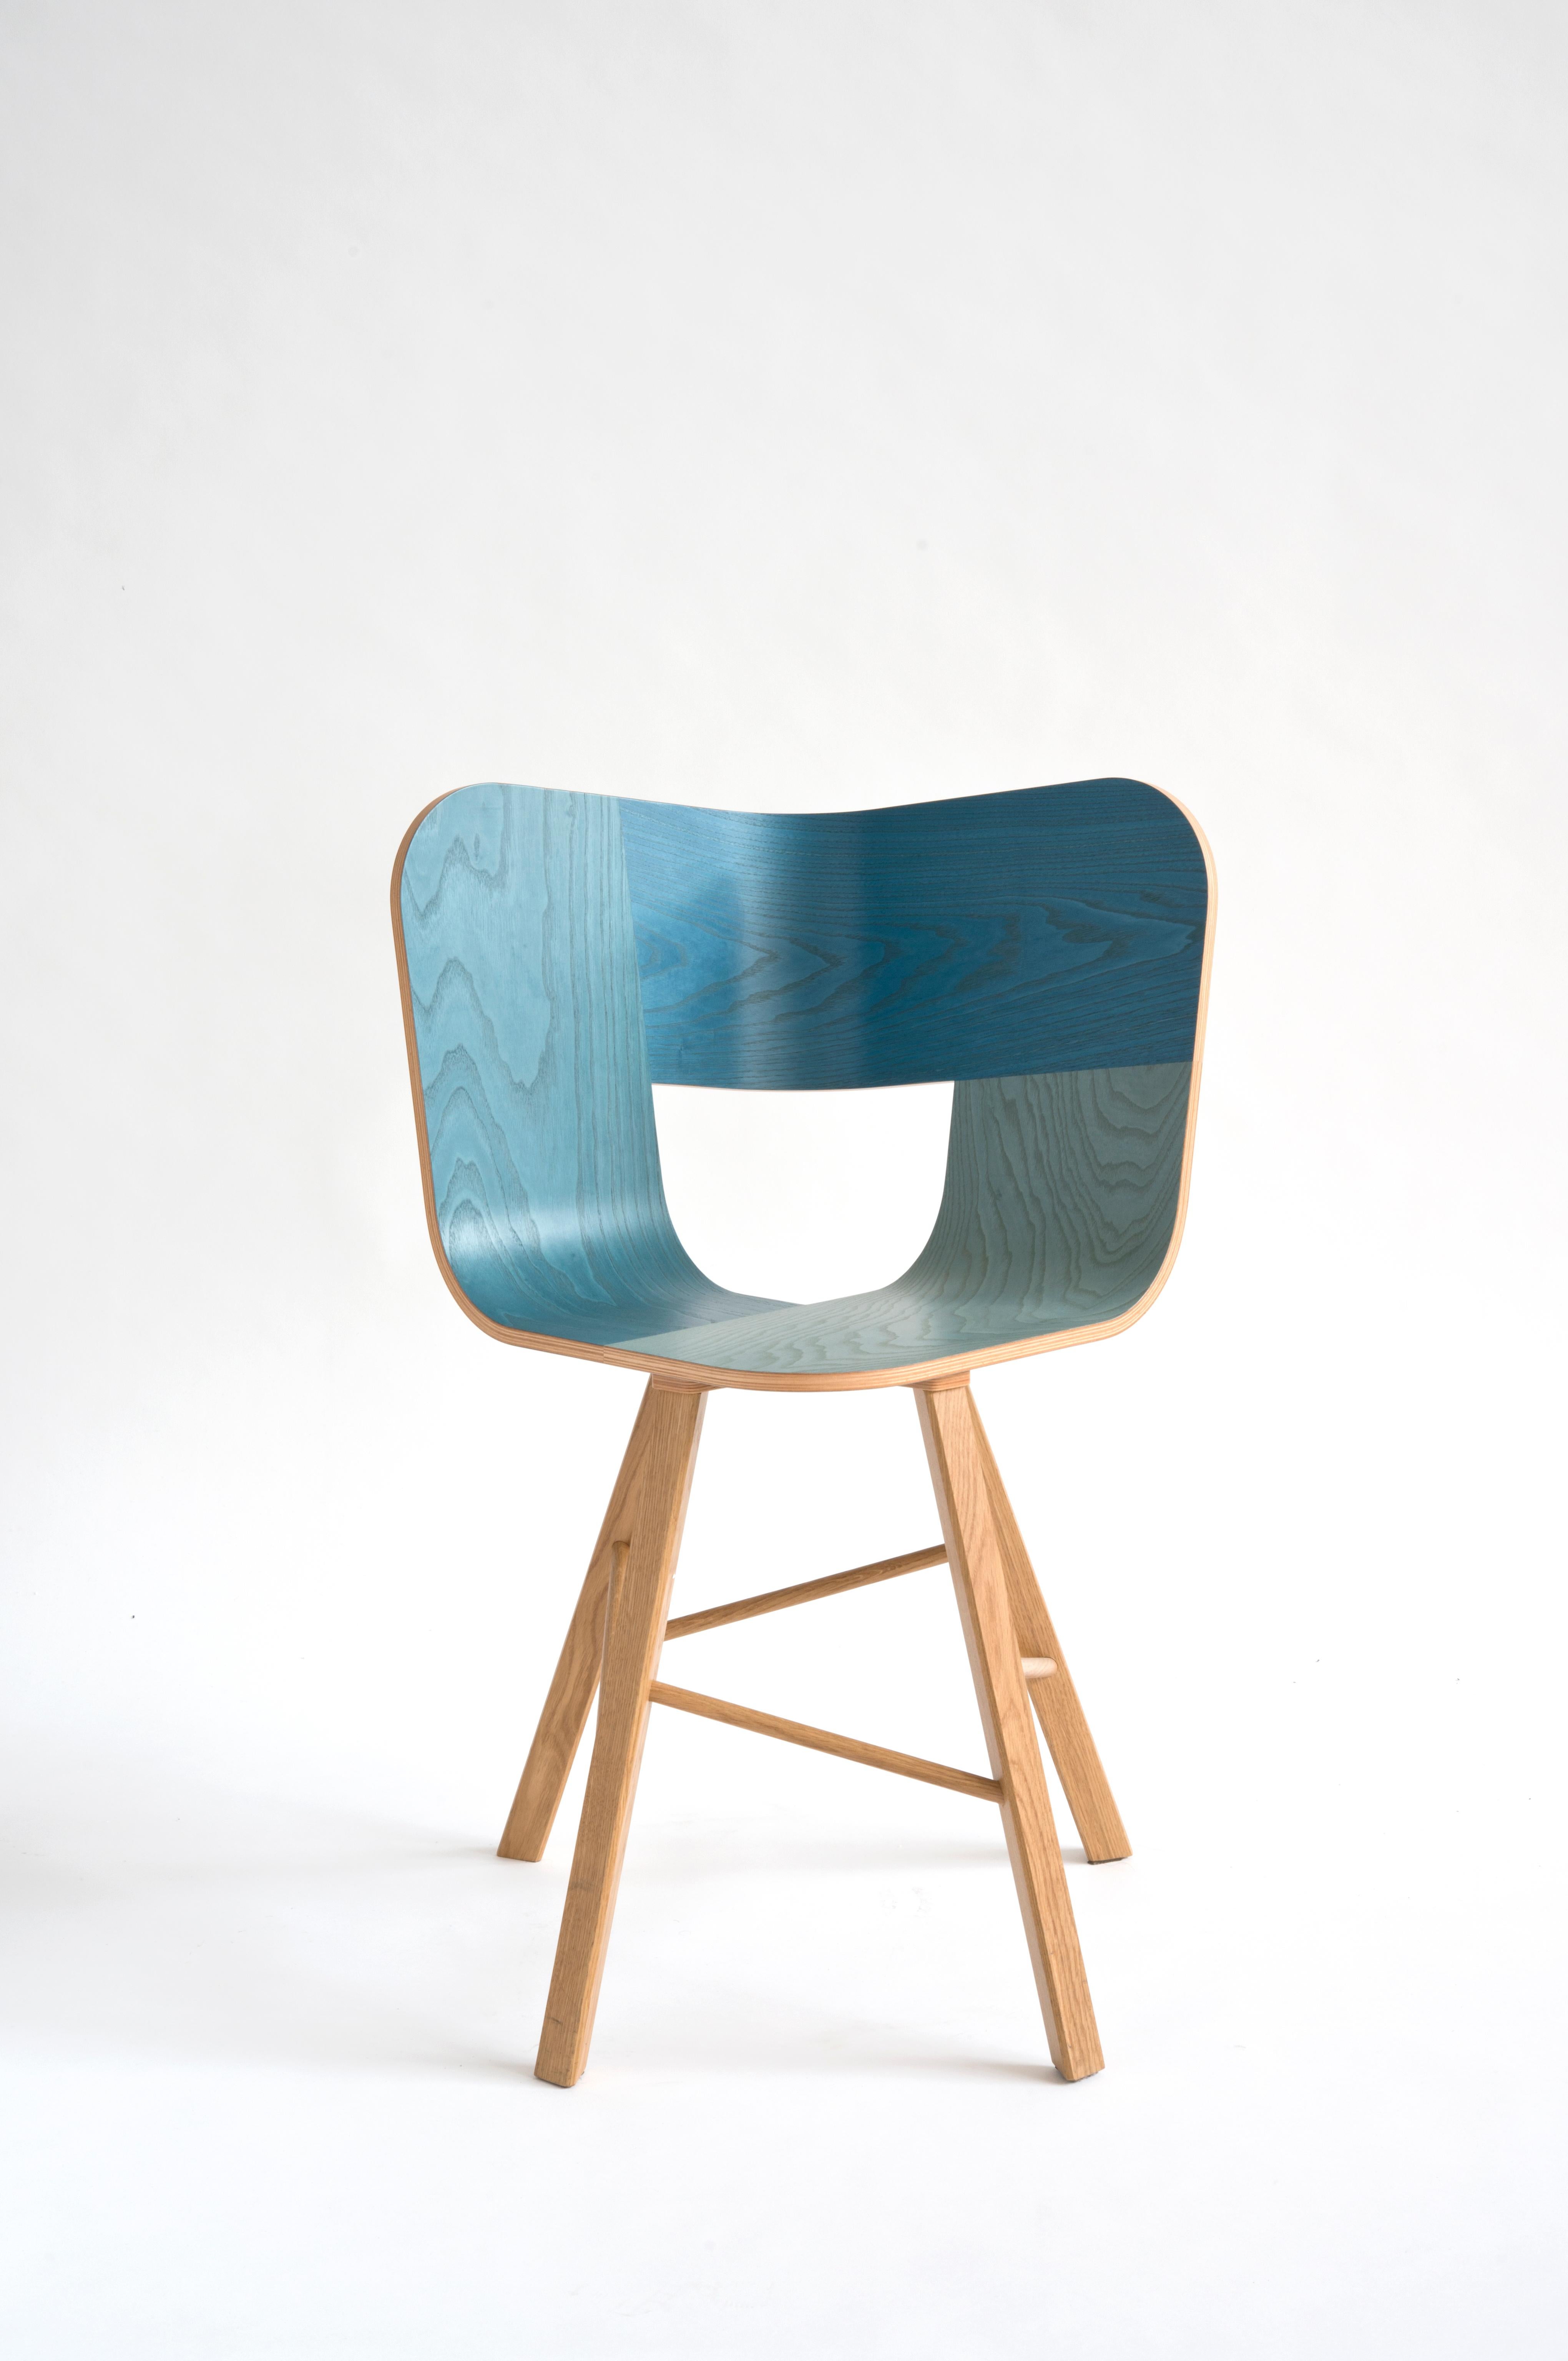 Tria 4-Fuß-Stuhl aus Holz, Denim von Colé Italia mit Lorenz+Kaz
(Sitz in RAL-Farbe - Beine in RAL-Farbe lackiert)
Abmessungen: H 82,5, T 52, B 61 cm
MATERIALIEN: Sperrholz Stuhl; 4 Beine massiver Eiche Basis

Auch verfügbar: TRIA; 3 Beine, mit